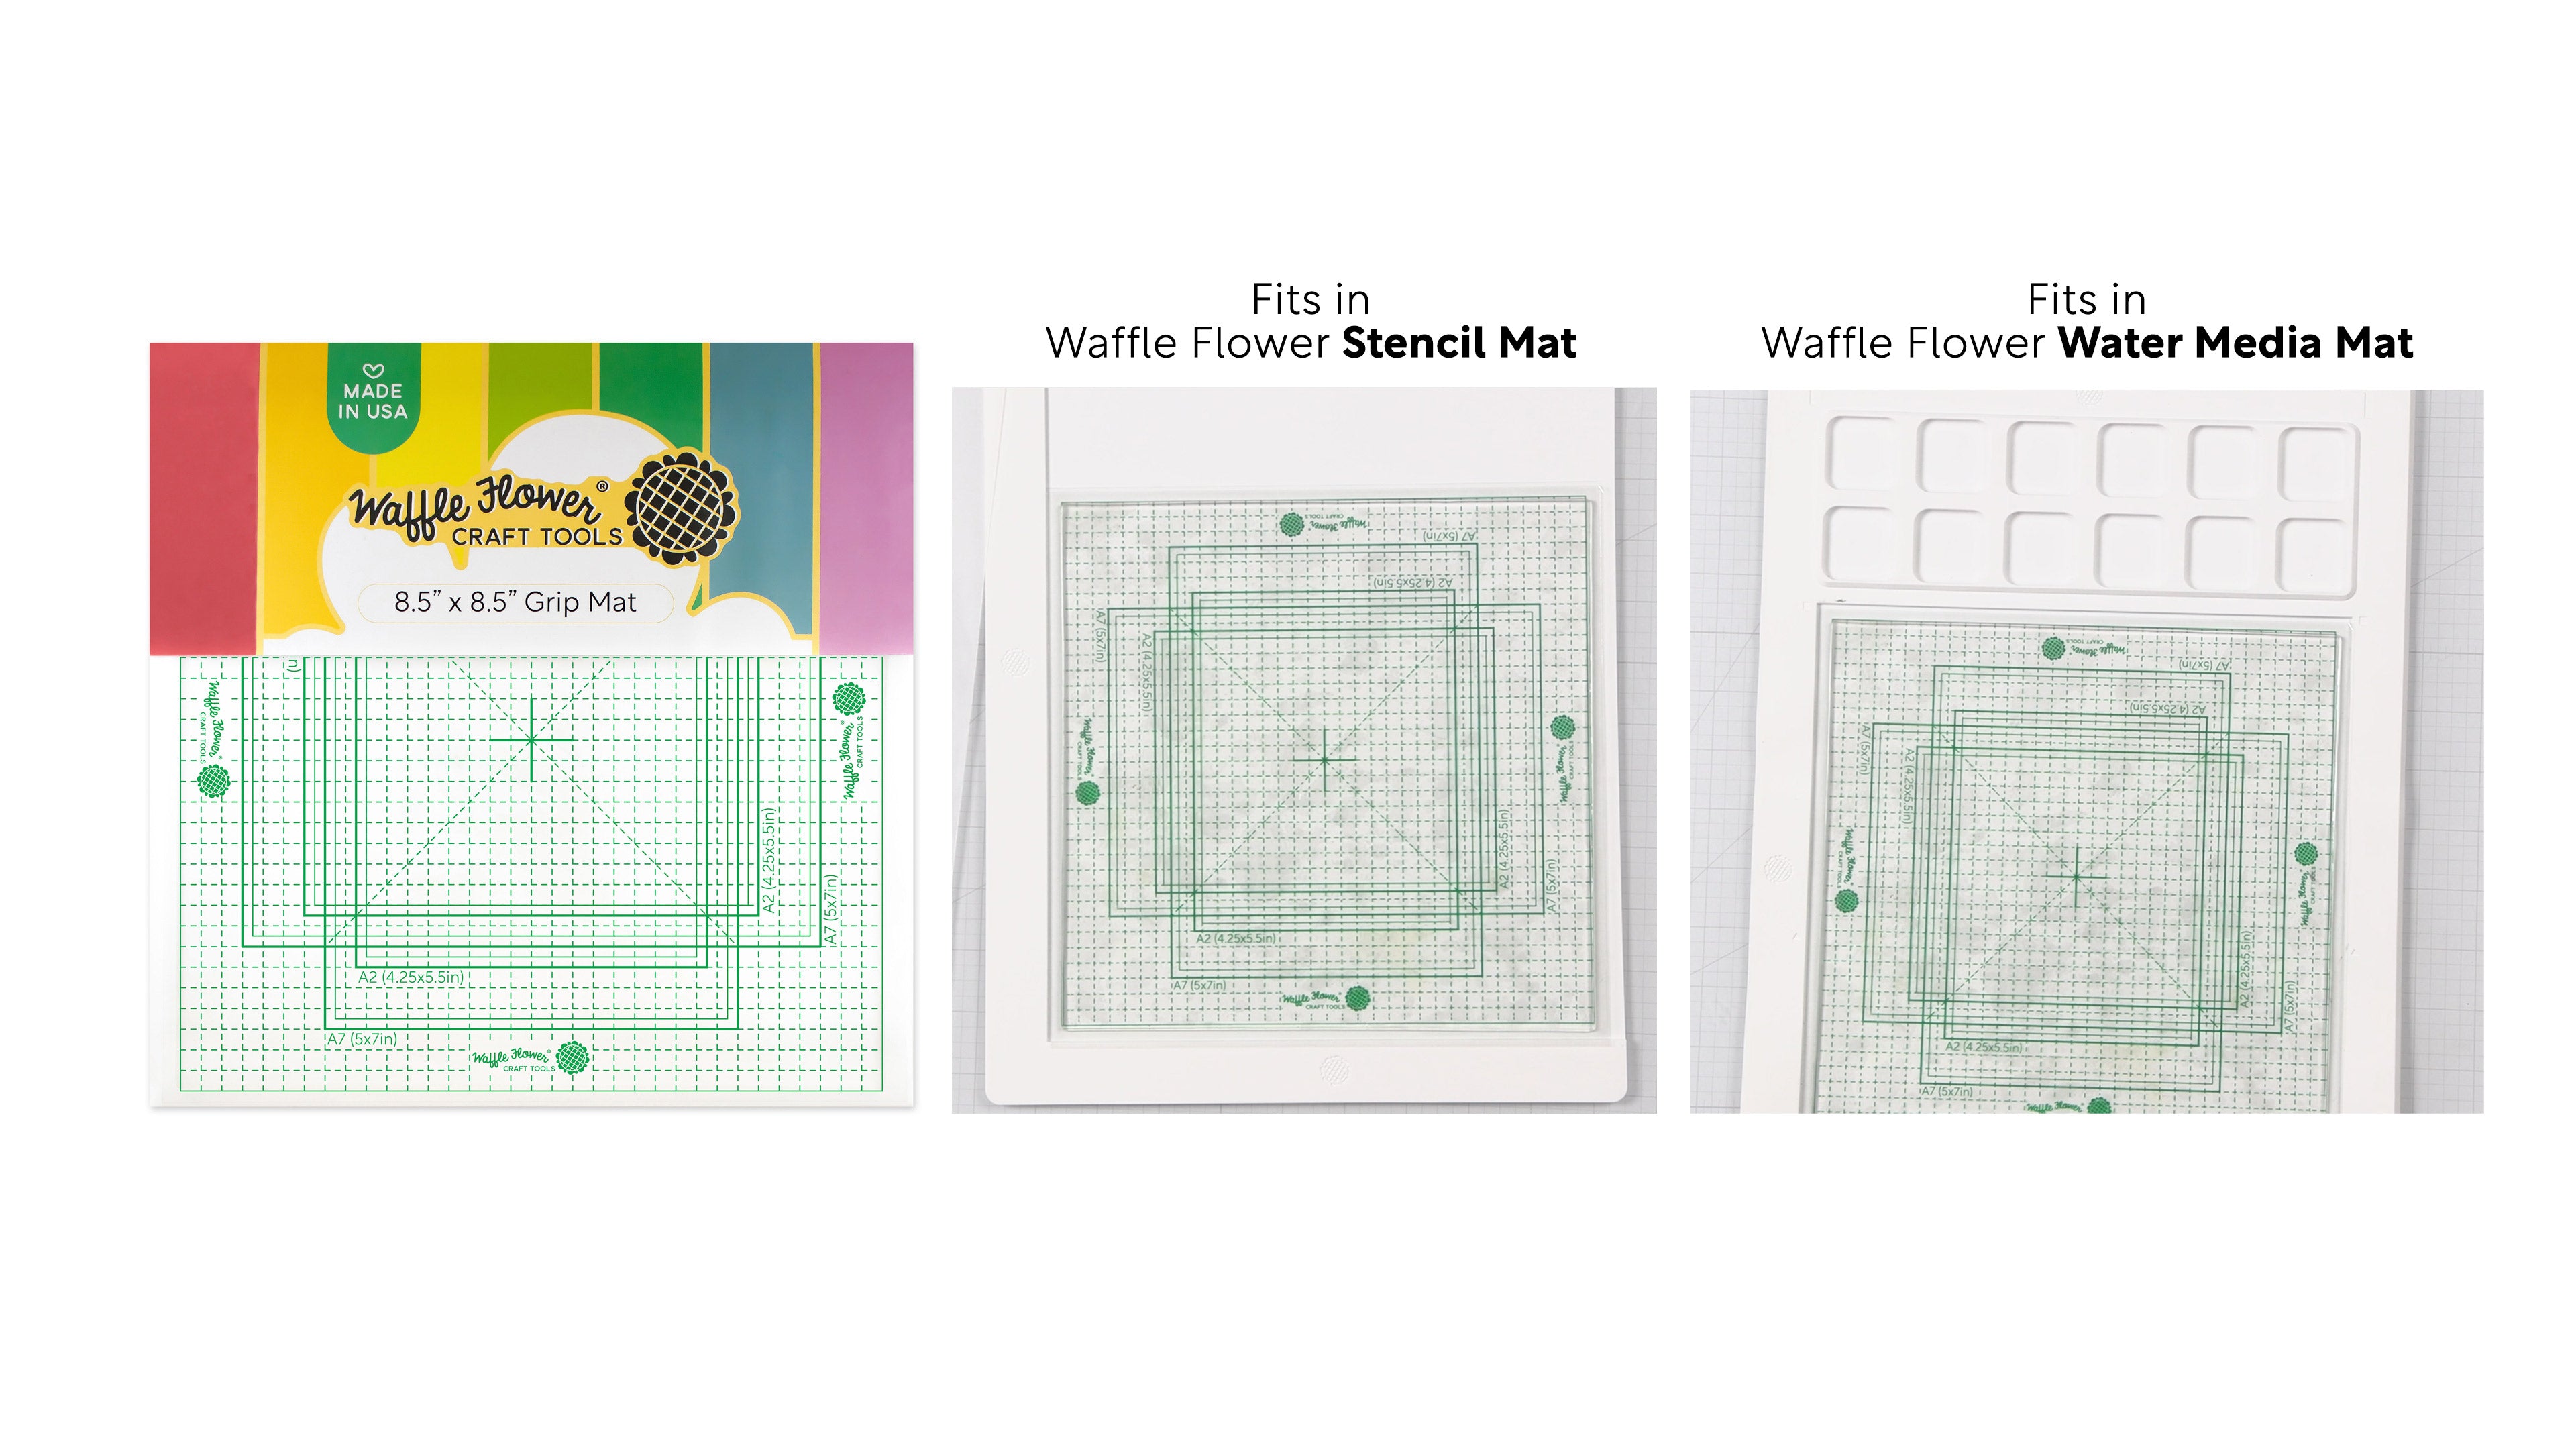 Waffle Flower 8.5x8.5 Grip Mat